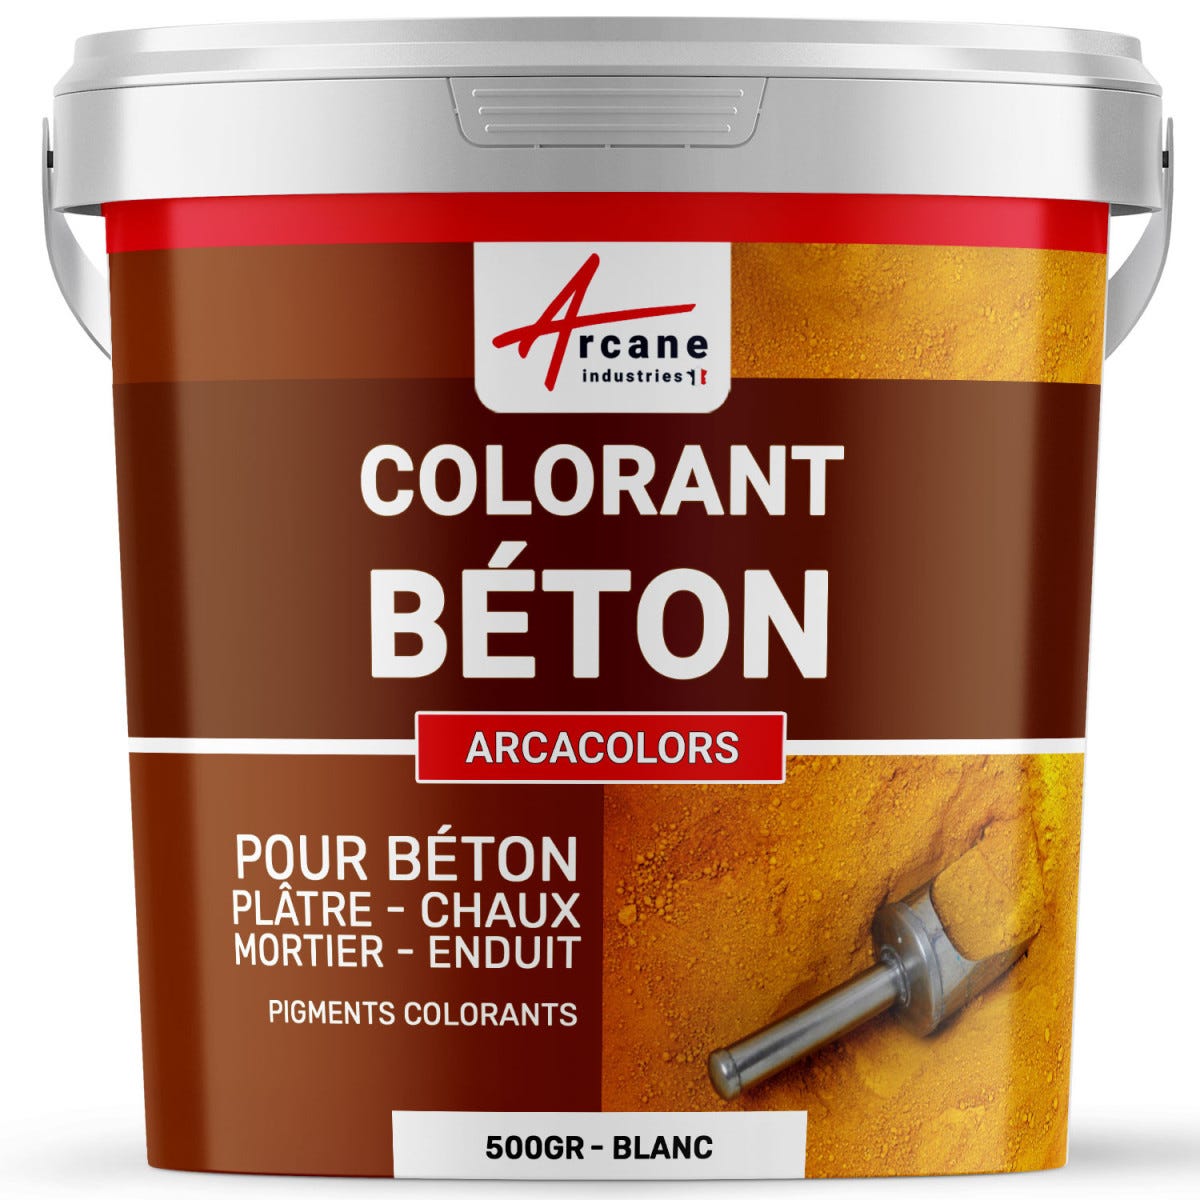 Pigments Colorants Premium pour enduit, béton, mortier, chaux, platre - ARCACOLORS - 4 kg - Vert - ARCANE INDUSTRIES 3